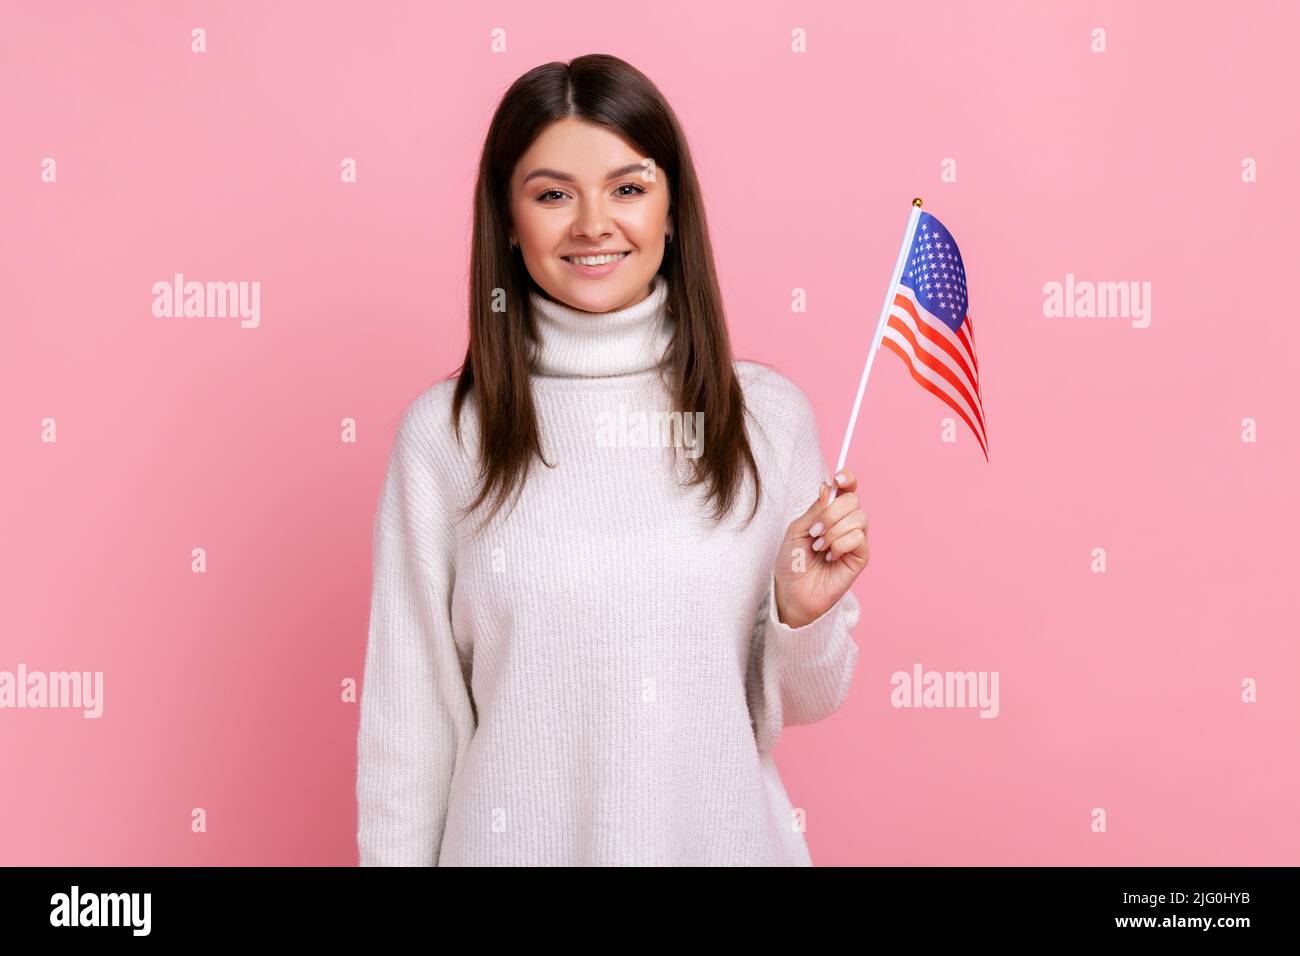 Donna bruna attraente che tiene la bandiera americana in mano e guarda la macchina fotografica con positivo, indossando bianco casual stile maglione. Studio interno girato isolato su sfondo rosa. Foto Stock